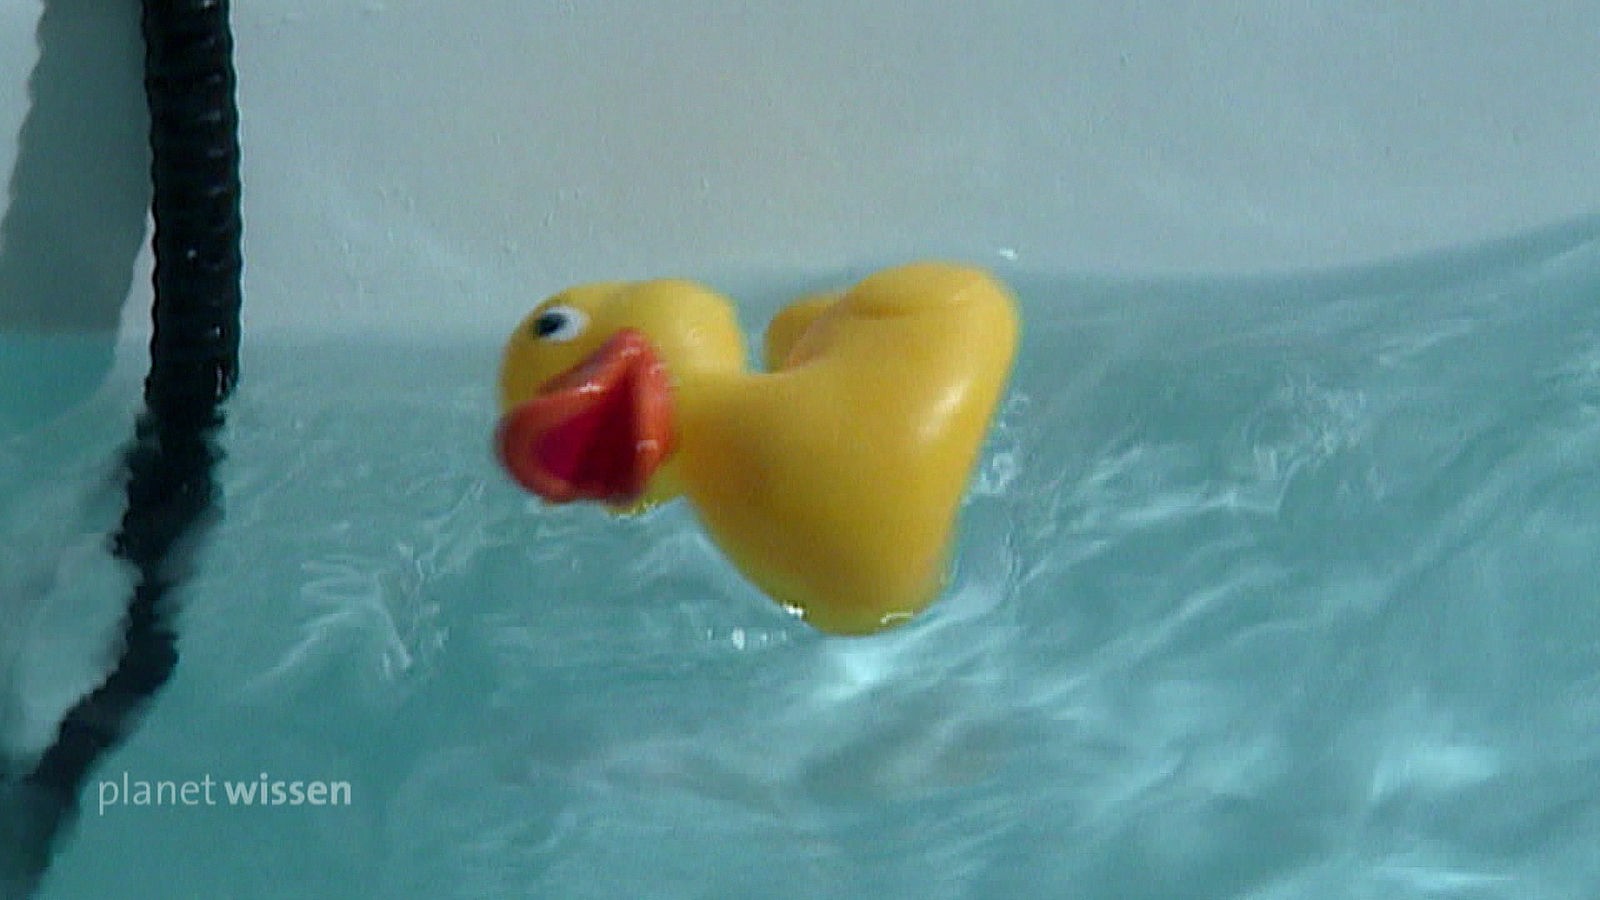 Eine gelbe Plastikenten liegt im Wasser einer Badewanne.